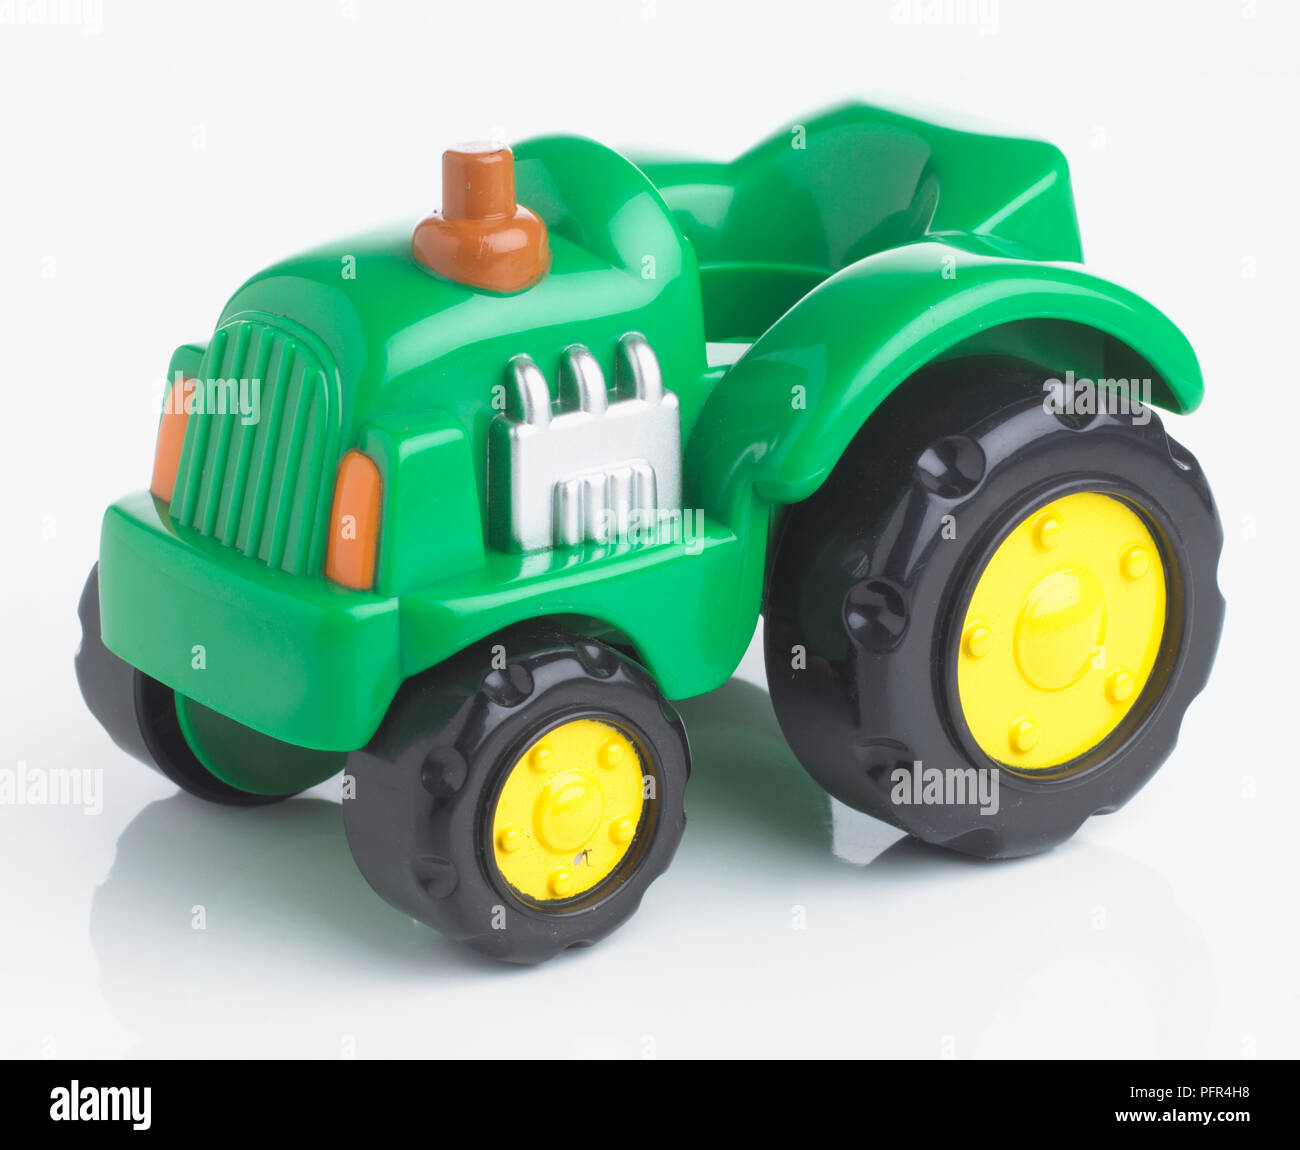 Plastic toy tractor Stock Photo